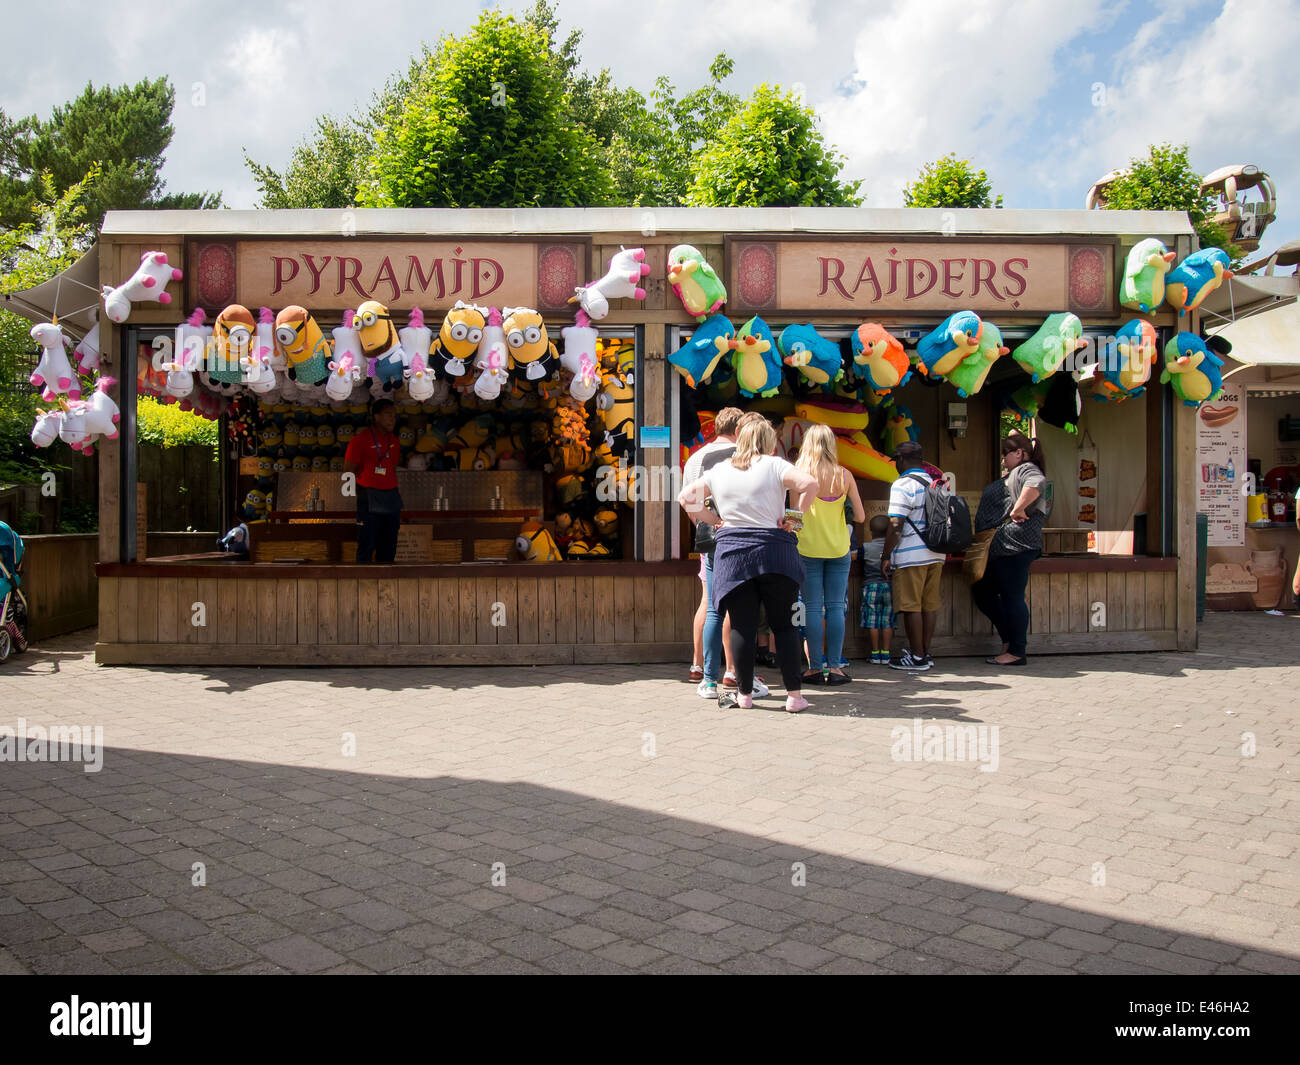 Ein Spiele-Stand in einem Freizeitpark mit Preisen zu sehen Stockfotografie  - Alamy